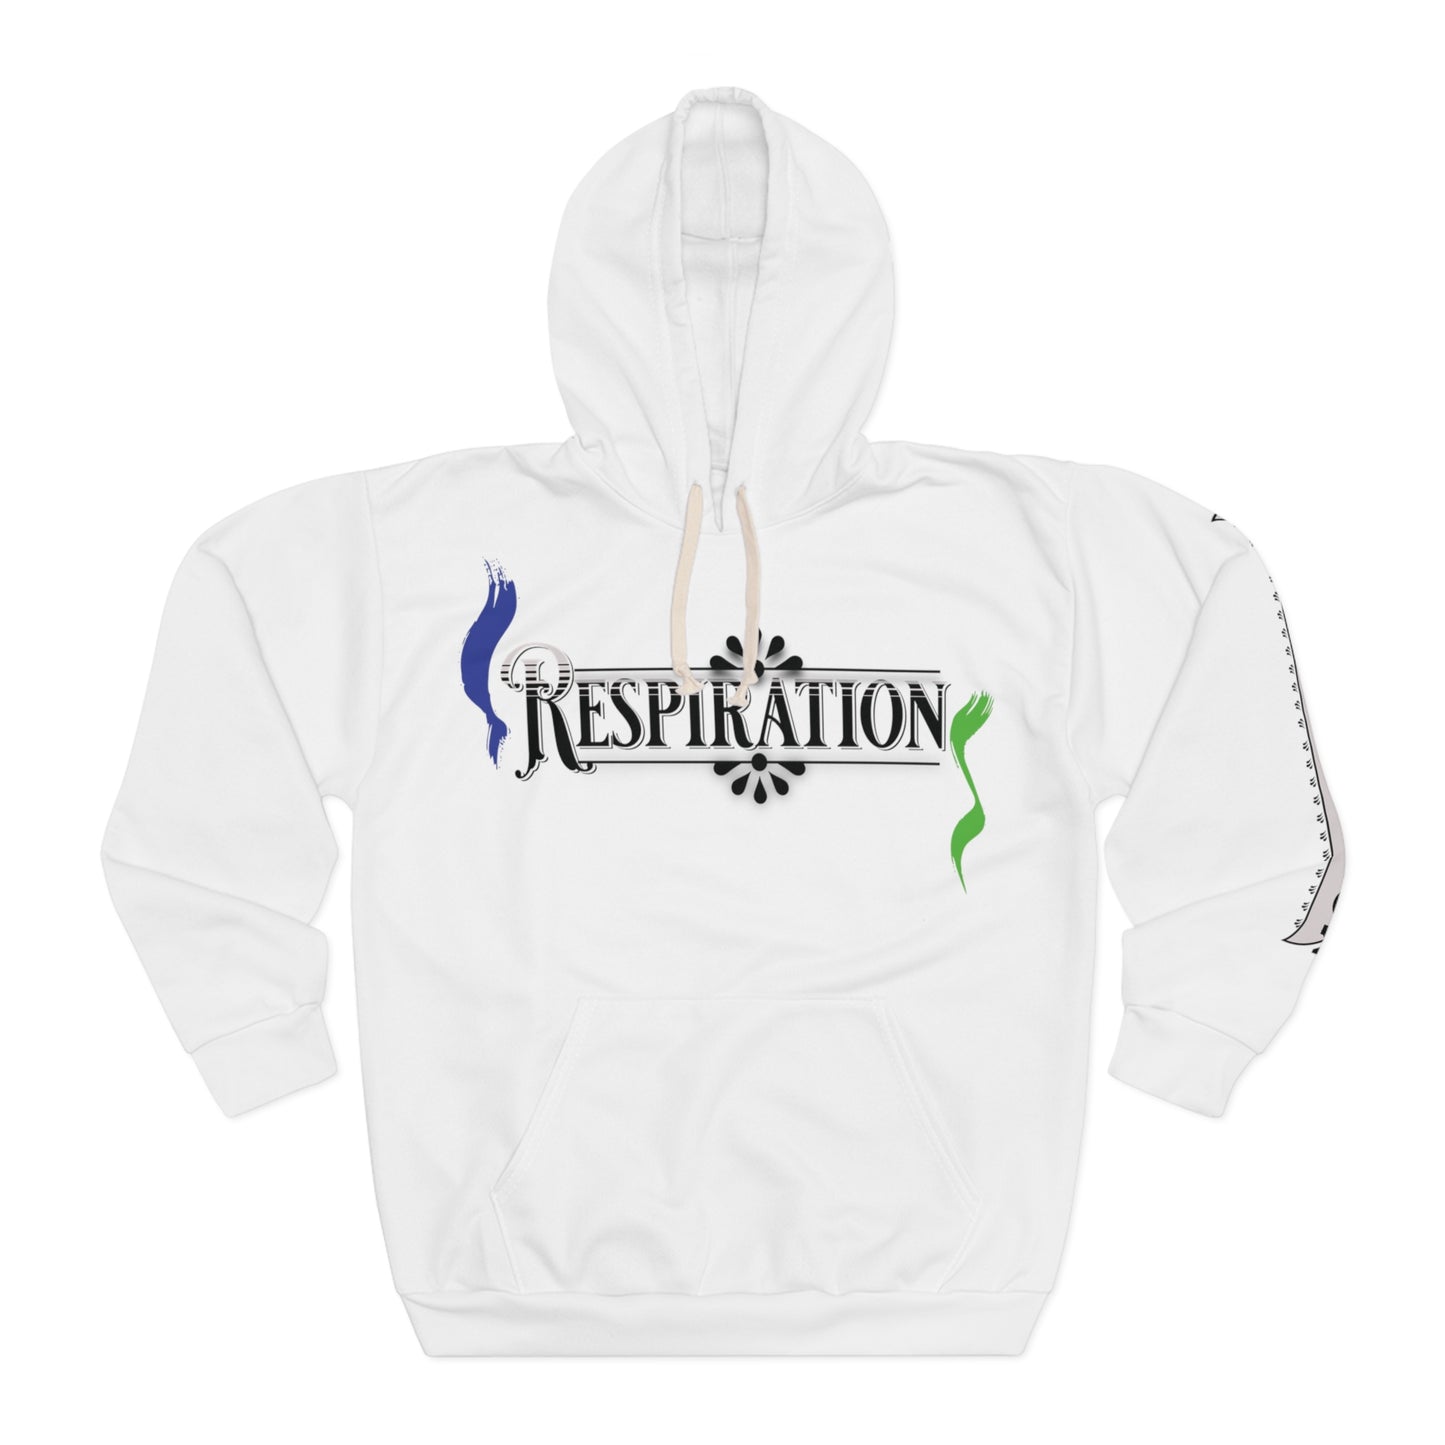 Respiration silk soft hoodie